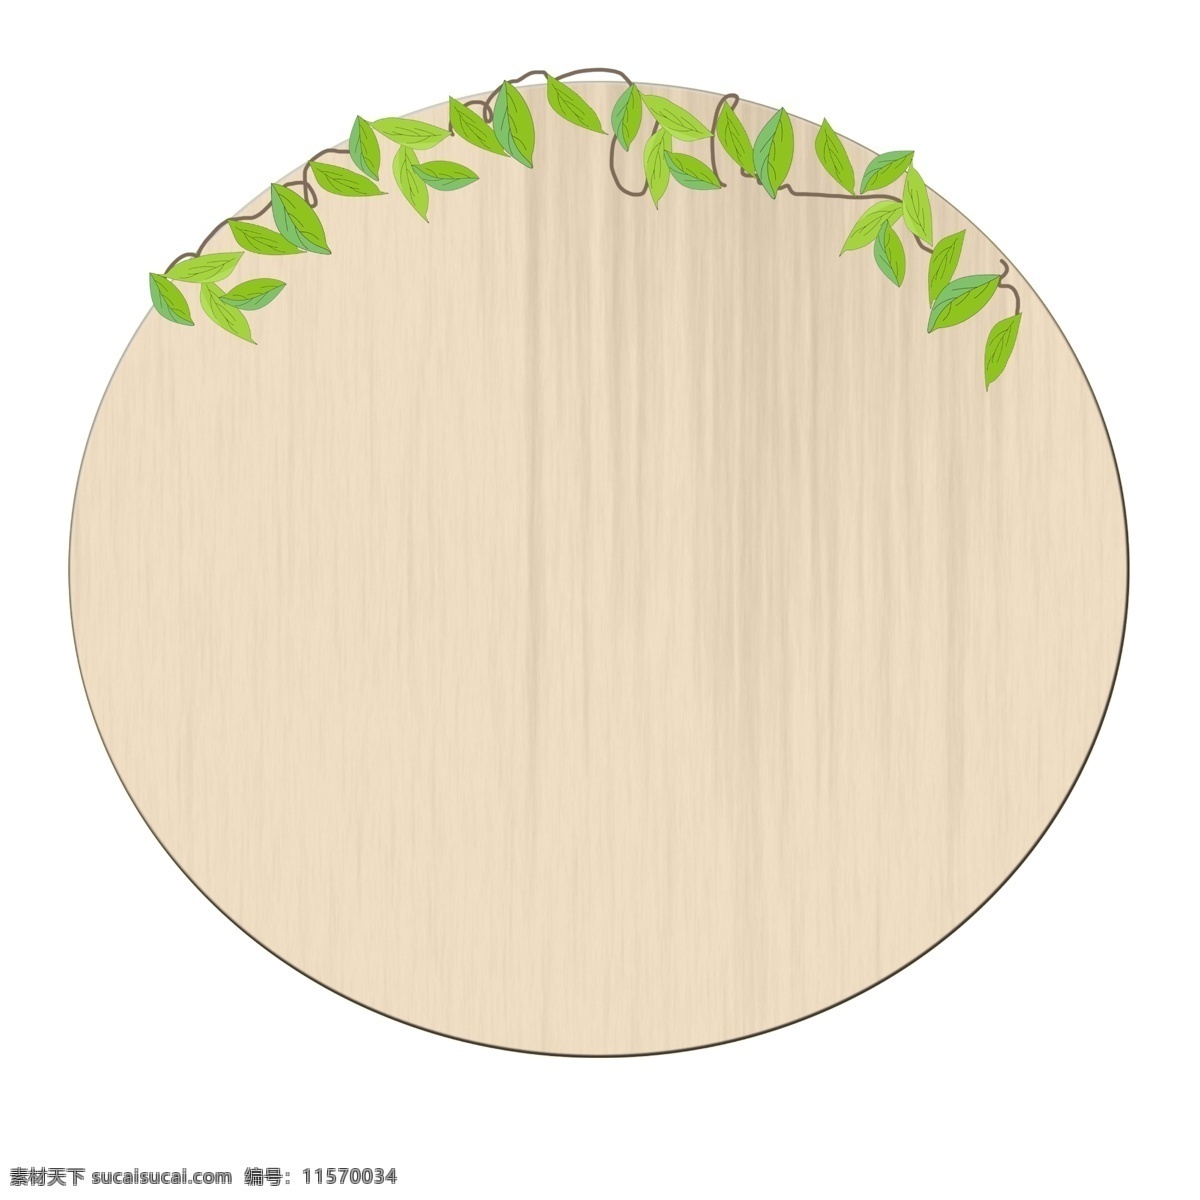 木质 木板 卡通 插画 圆圆的木质 卡通插画 木质插画 木材插画 木材 木头 绿色的叶子